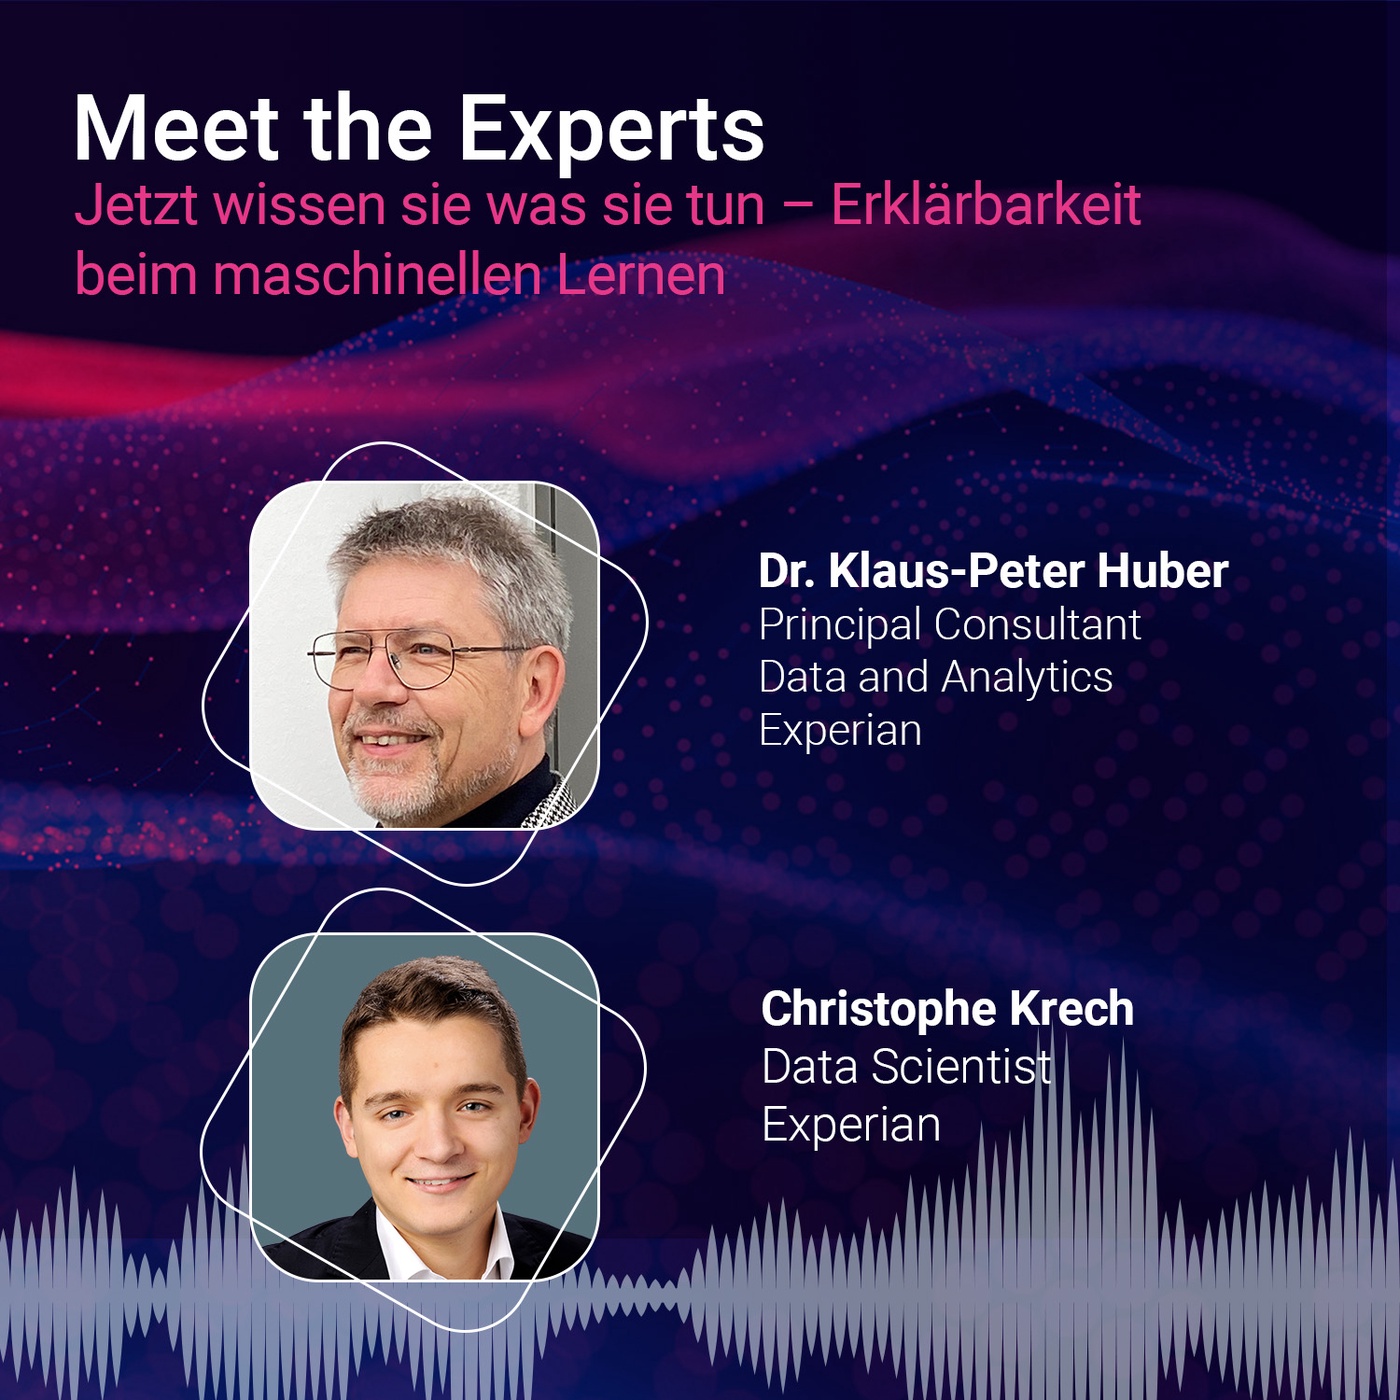 Data Analytics mit Christophe Krech und Dr. Klaus-Peter Huber